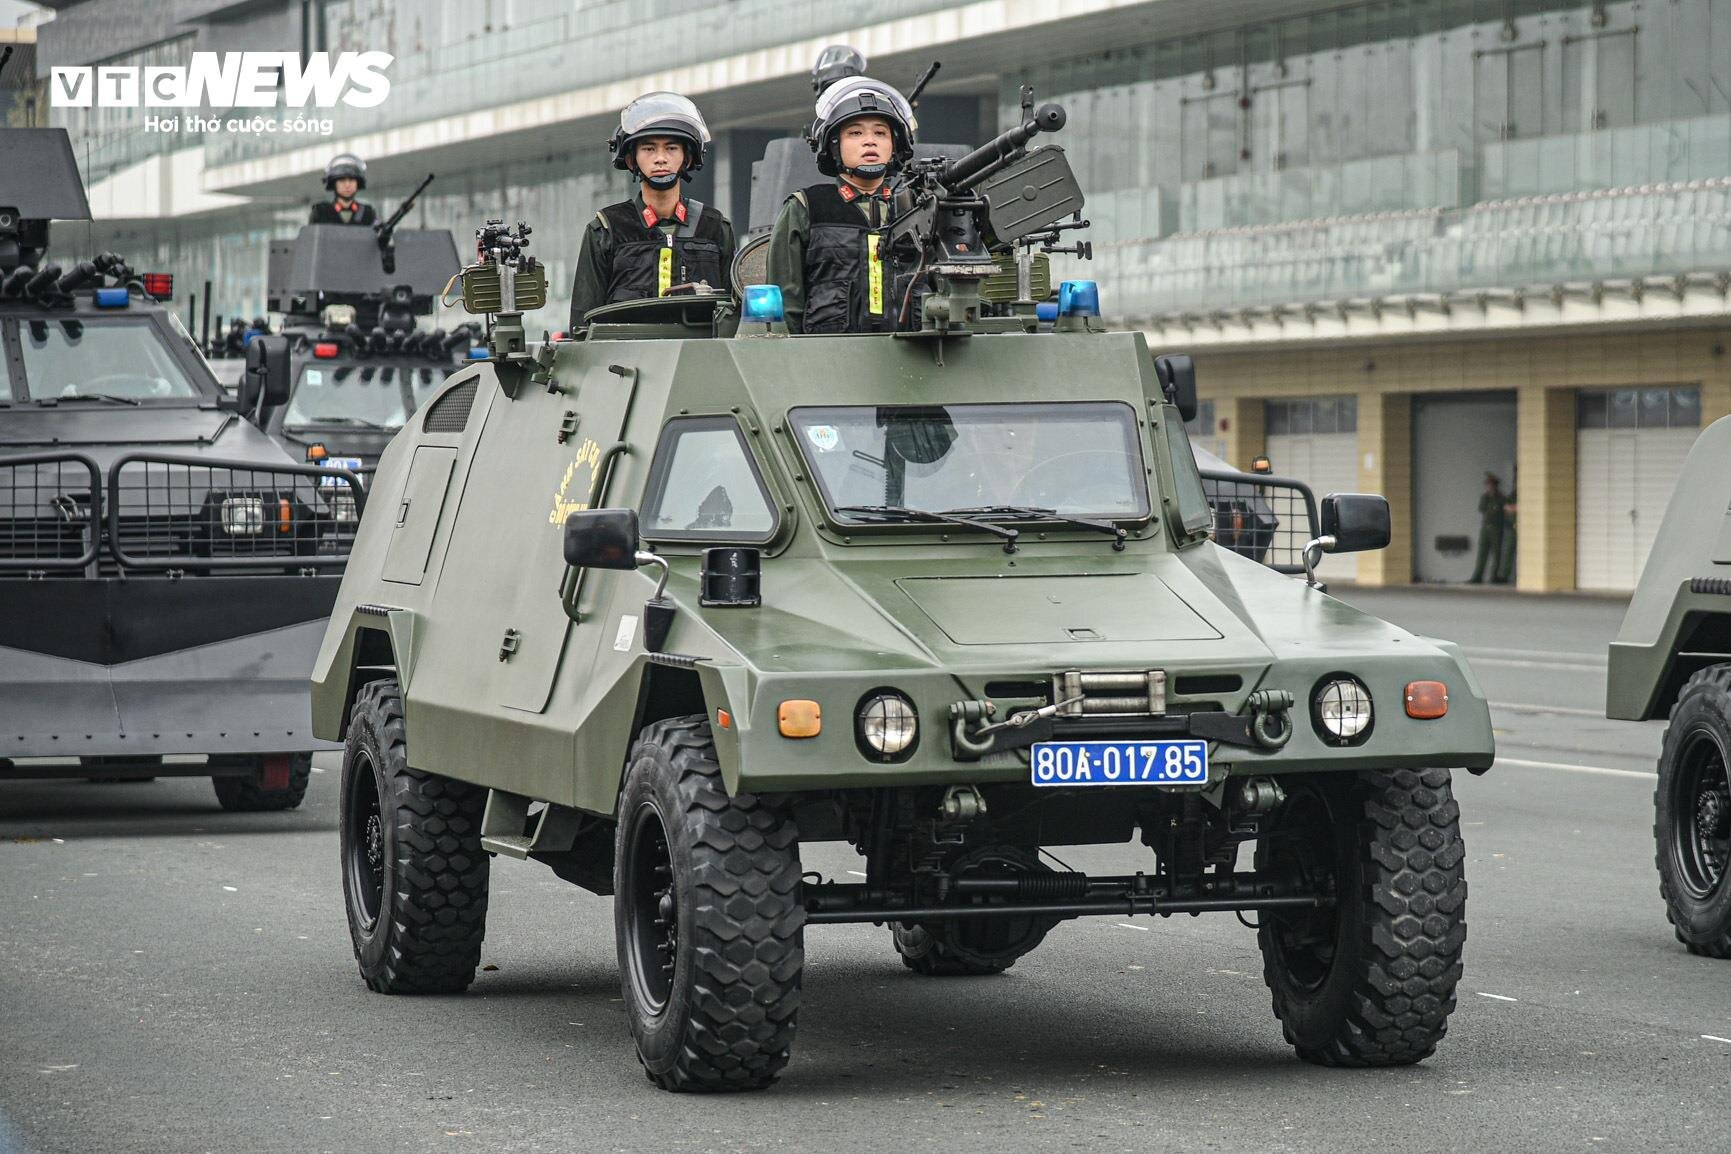 Cận cảnh dàn xe đặc chủng chống khủng bố của Cảnh sát cơ động - 3